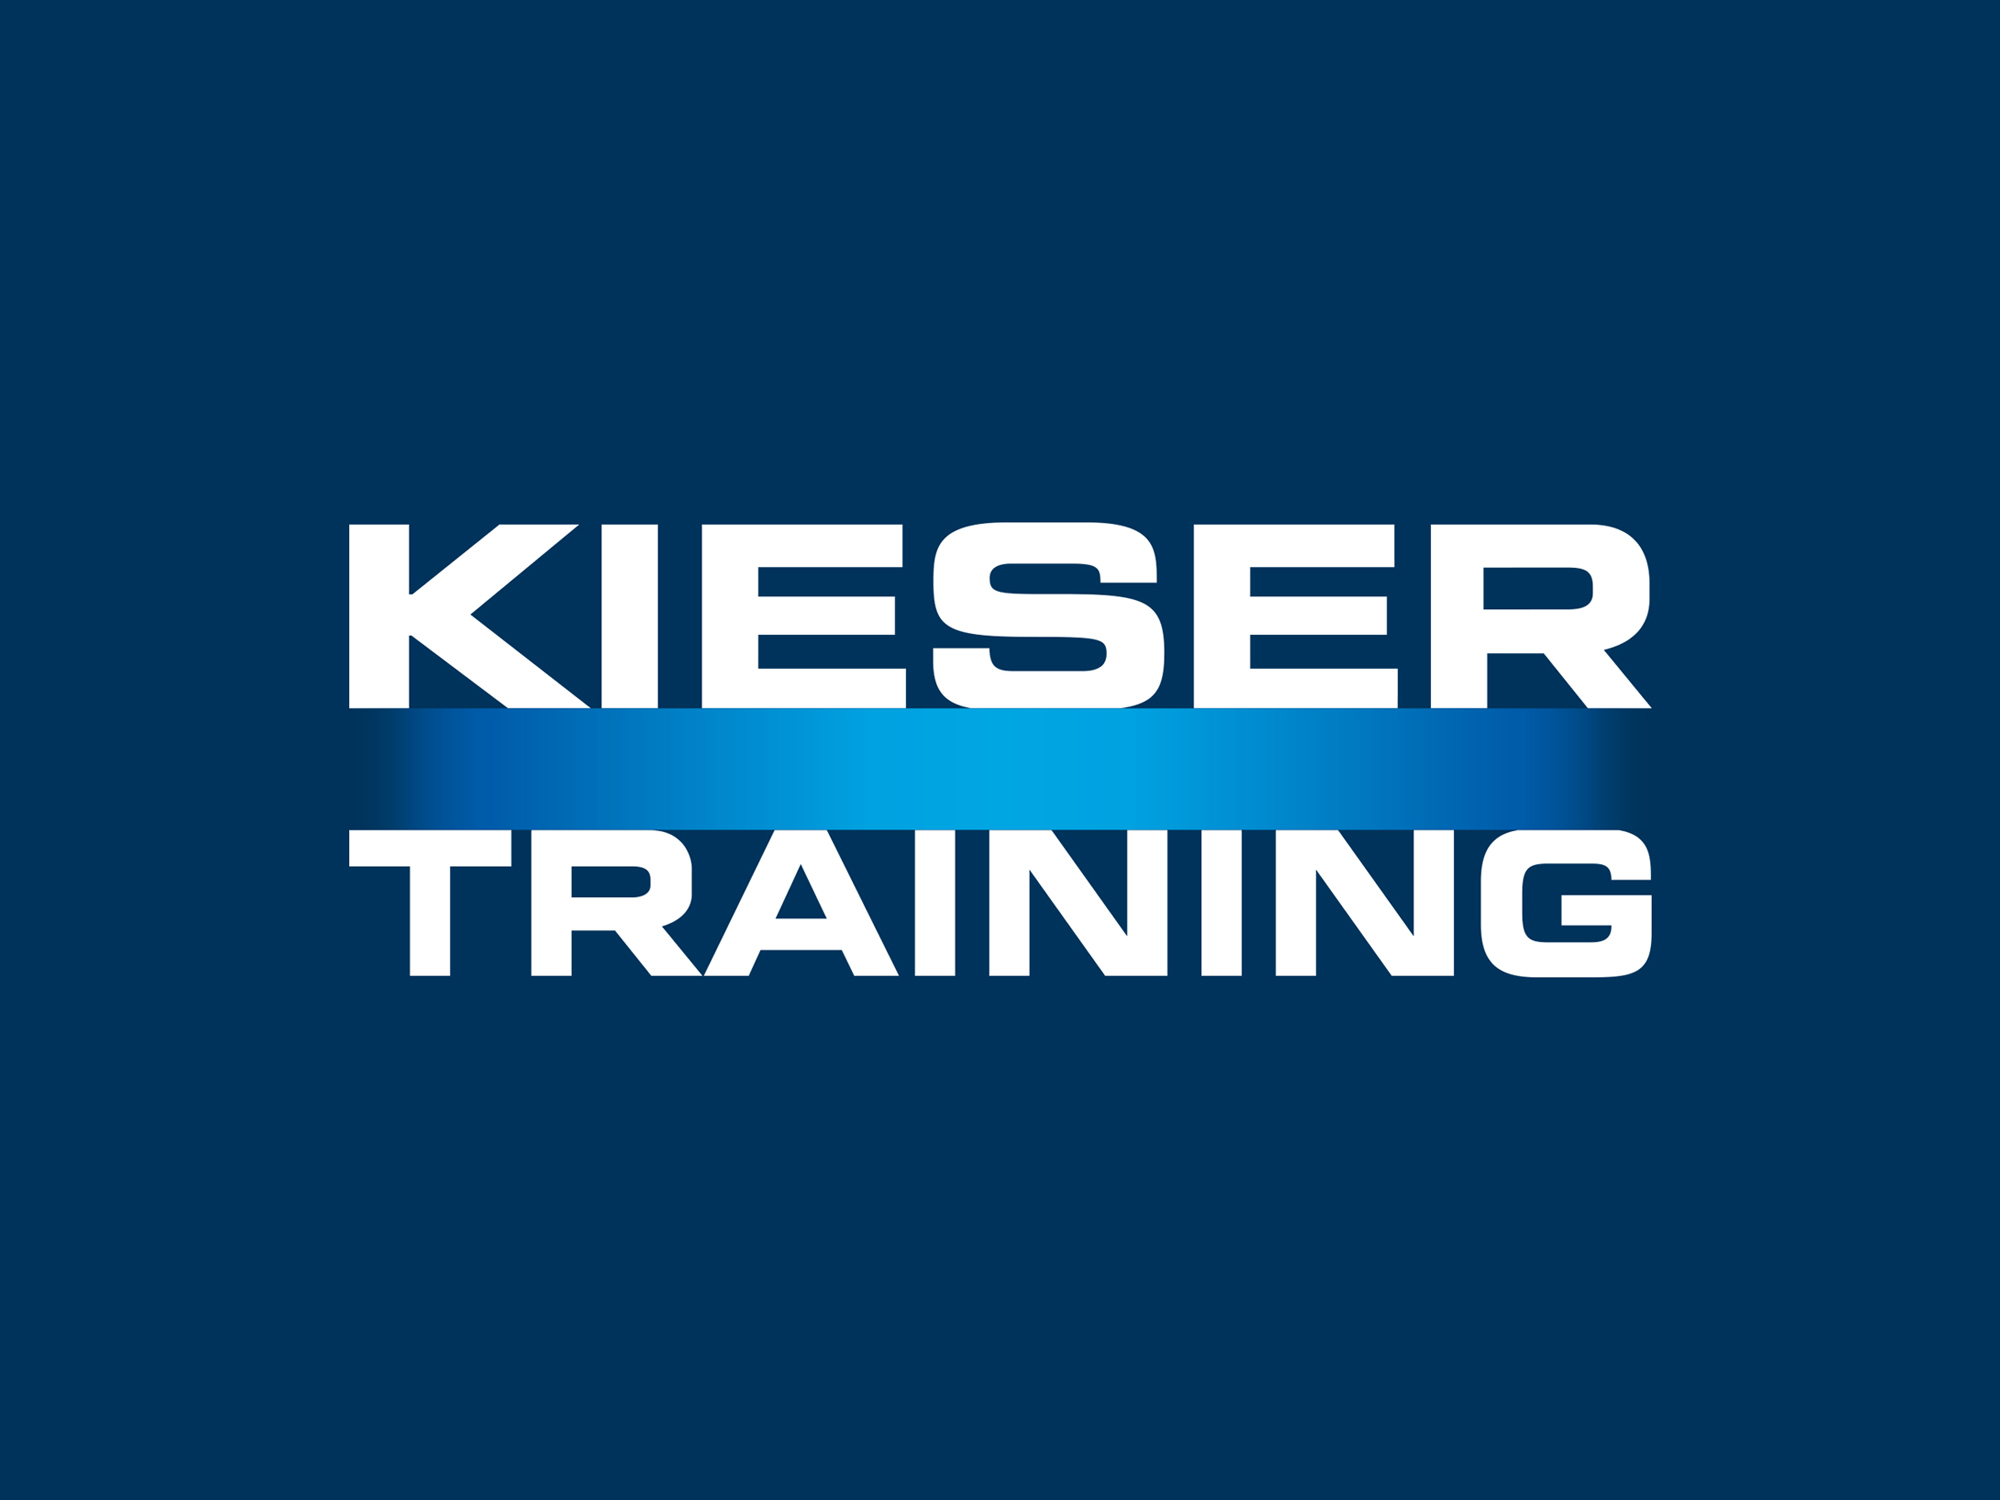 Kieser Training GmbH